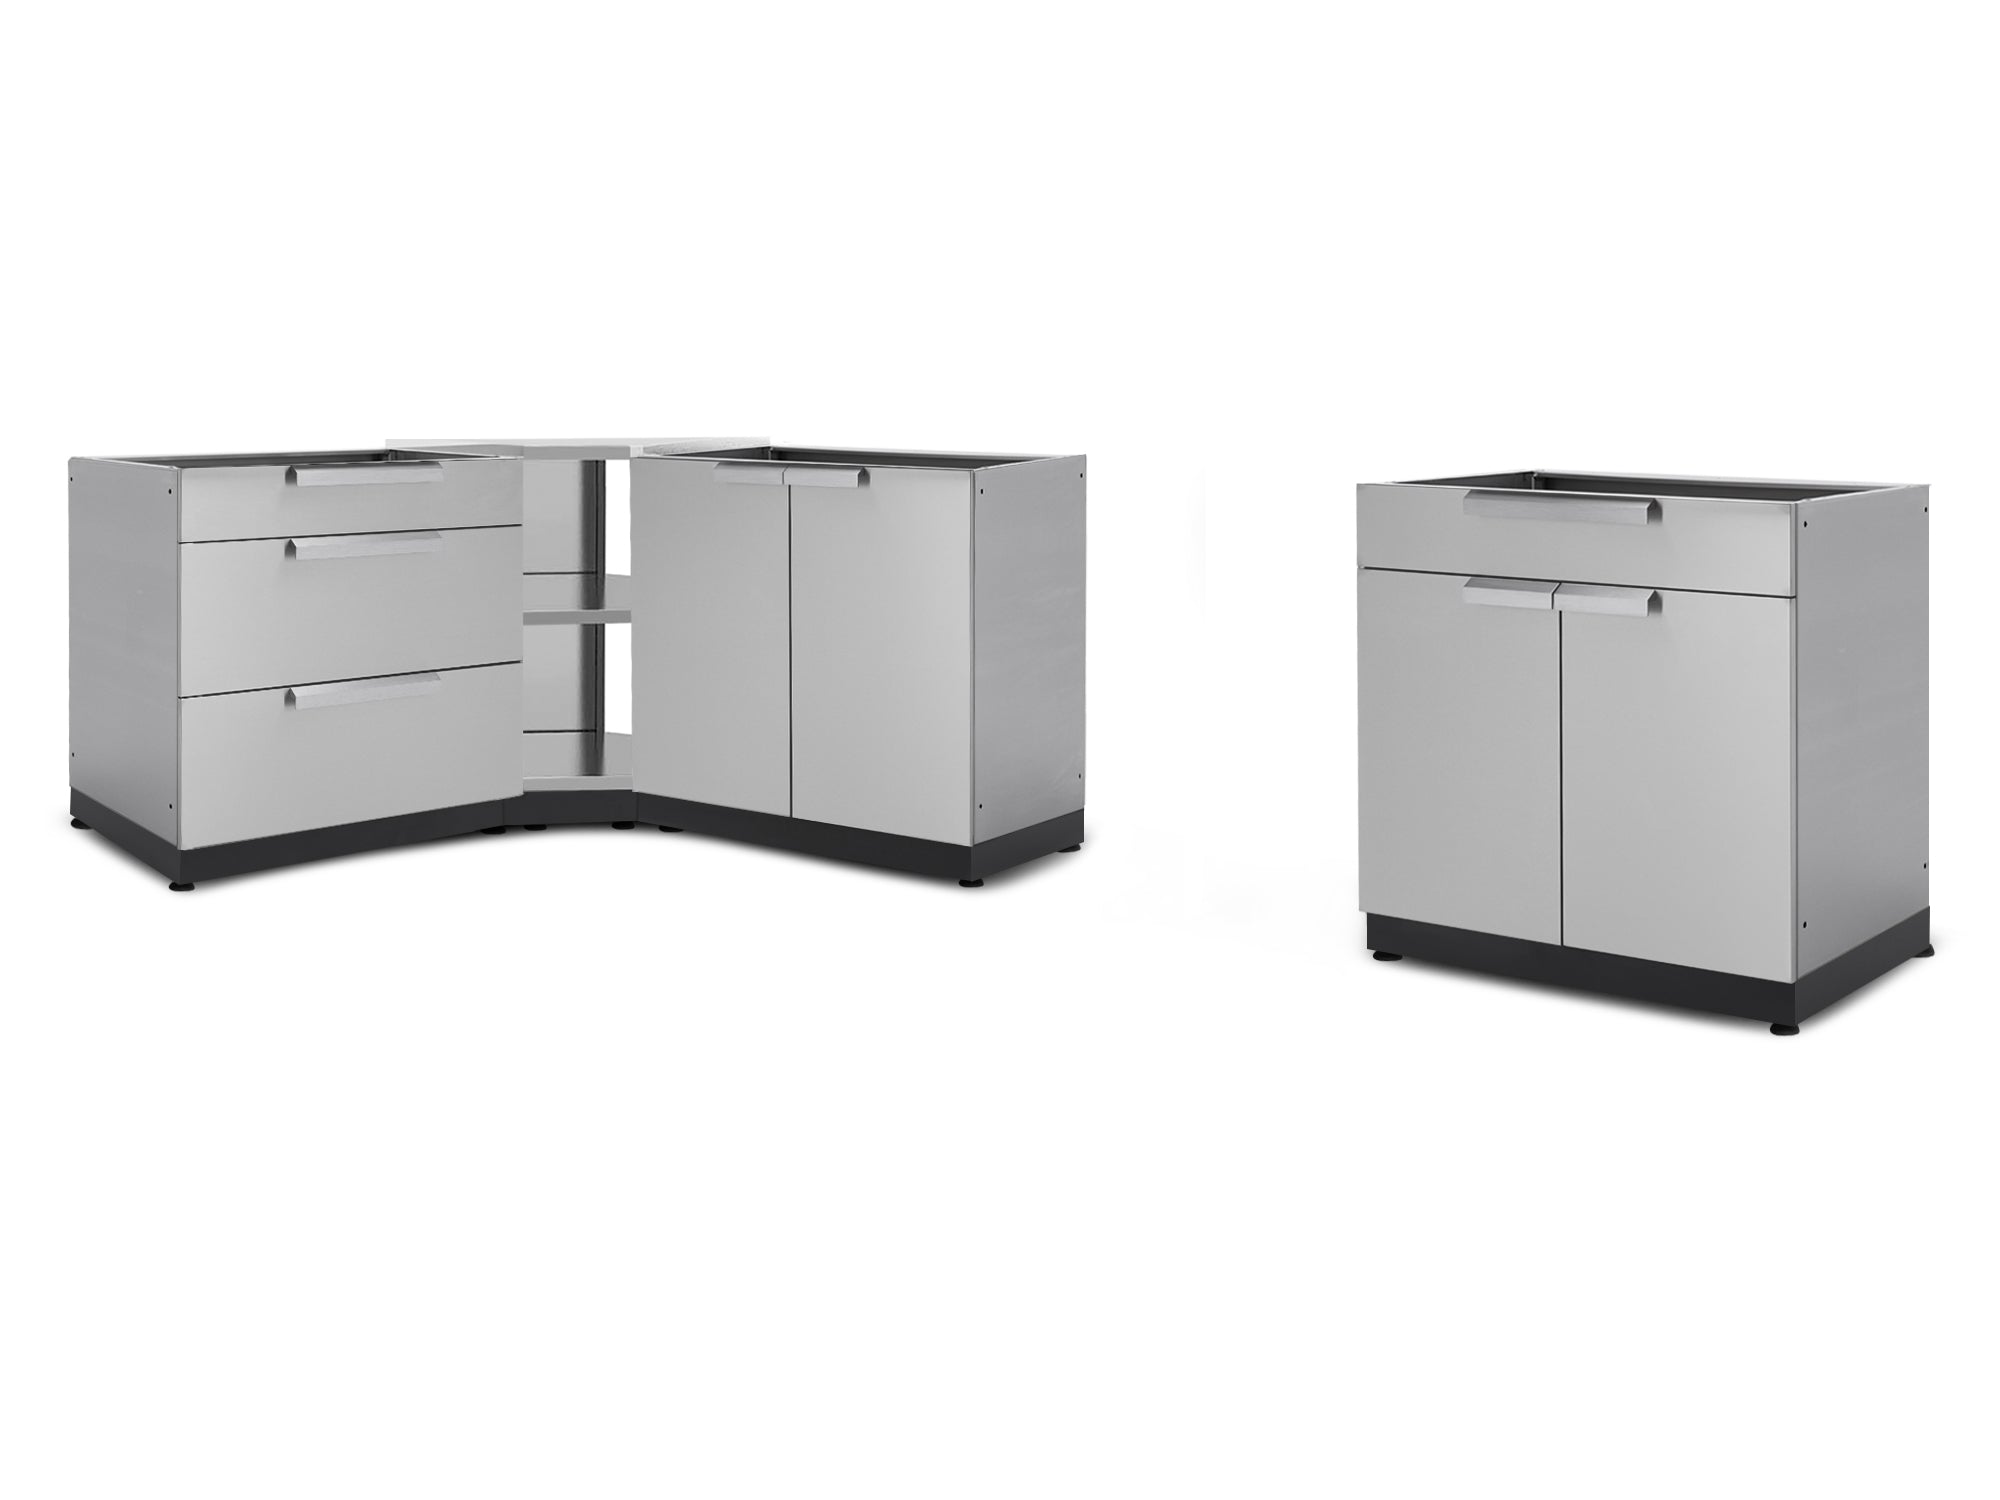 NewAge Outdoor Kitchen Stainless Steel 4 Piece Cabinet Set with Corner Shelf, 2-Door, 3-Drawer, Bar Cabinet